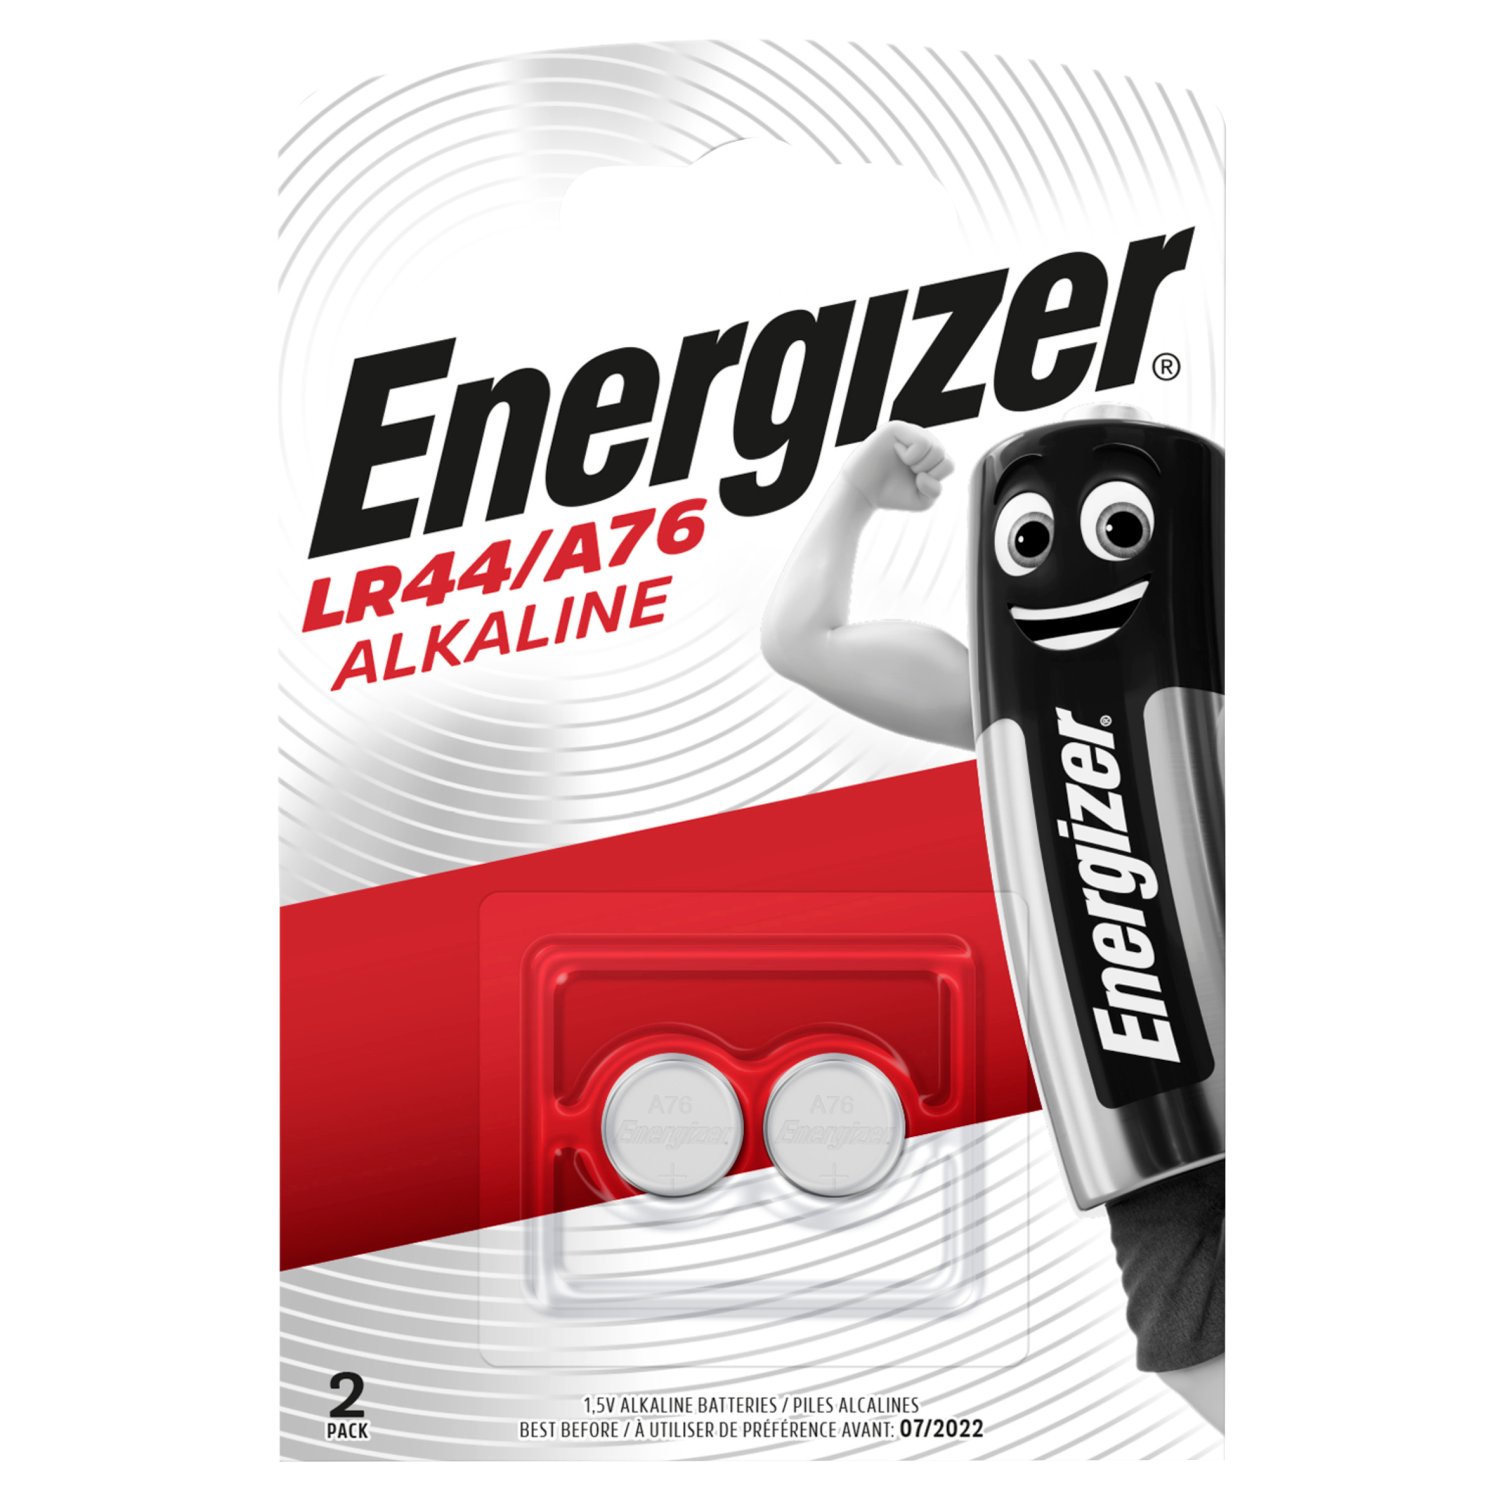 Energizer LR44/A76 Button Batteries 2 Pack (1 Piece)